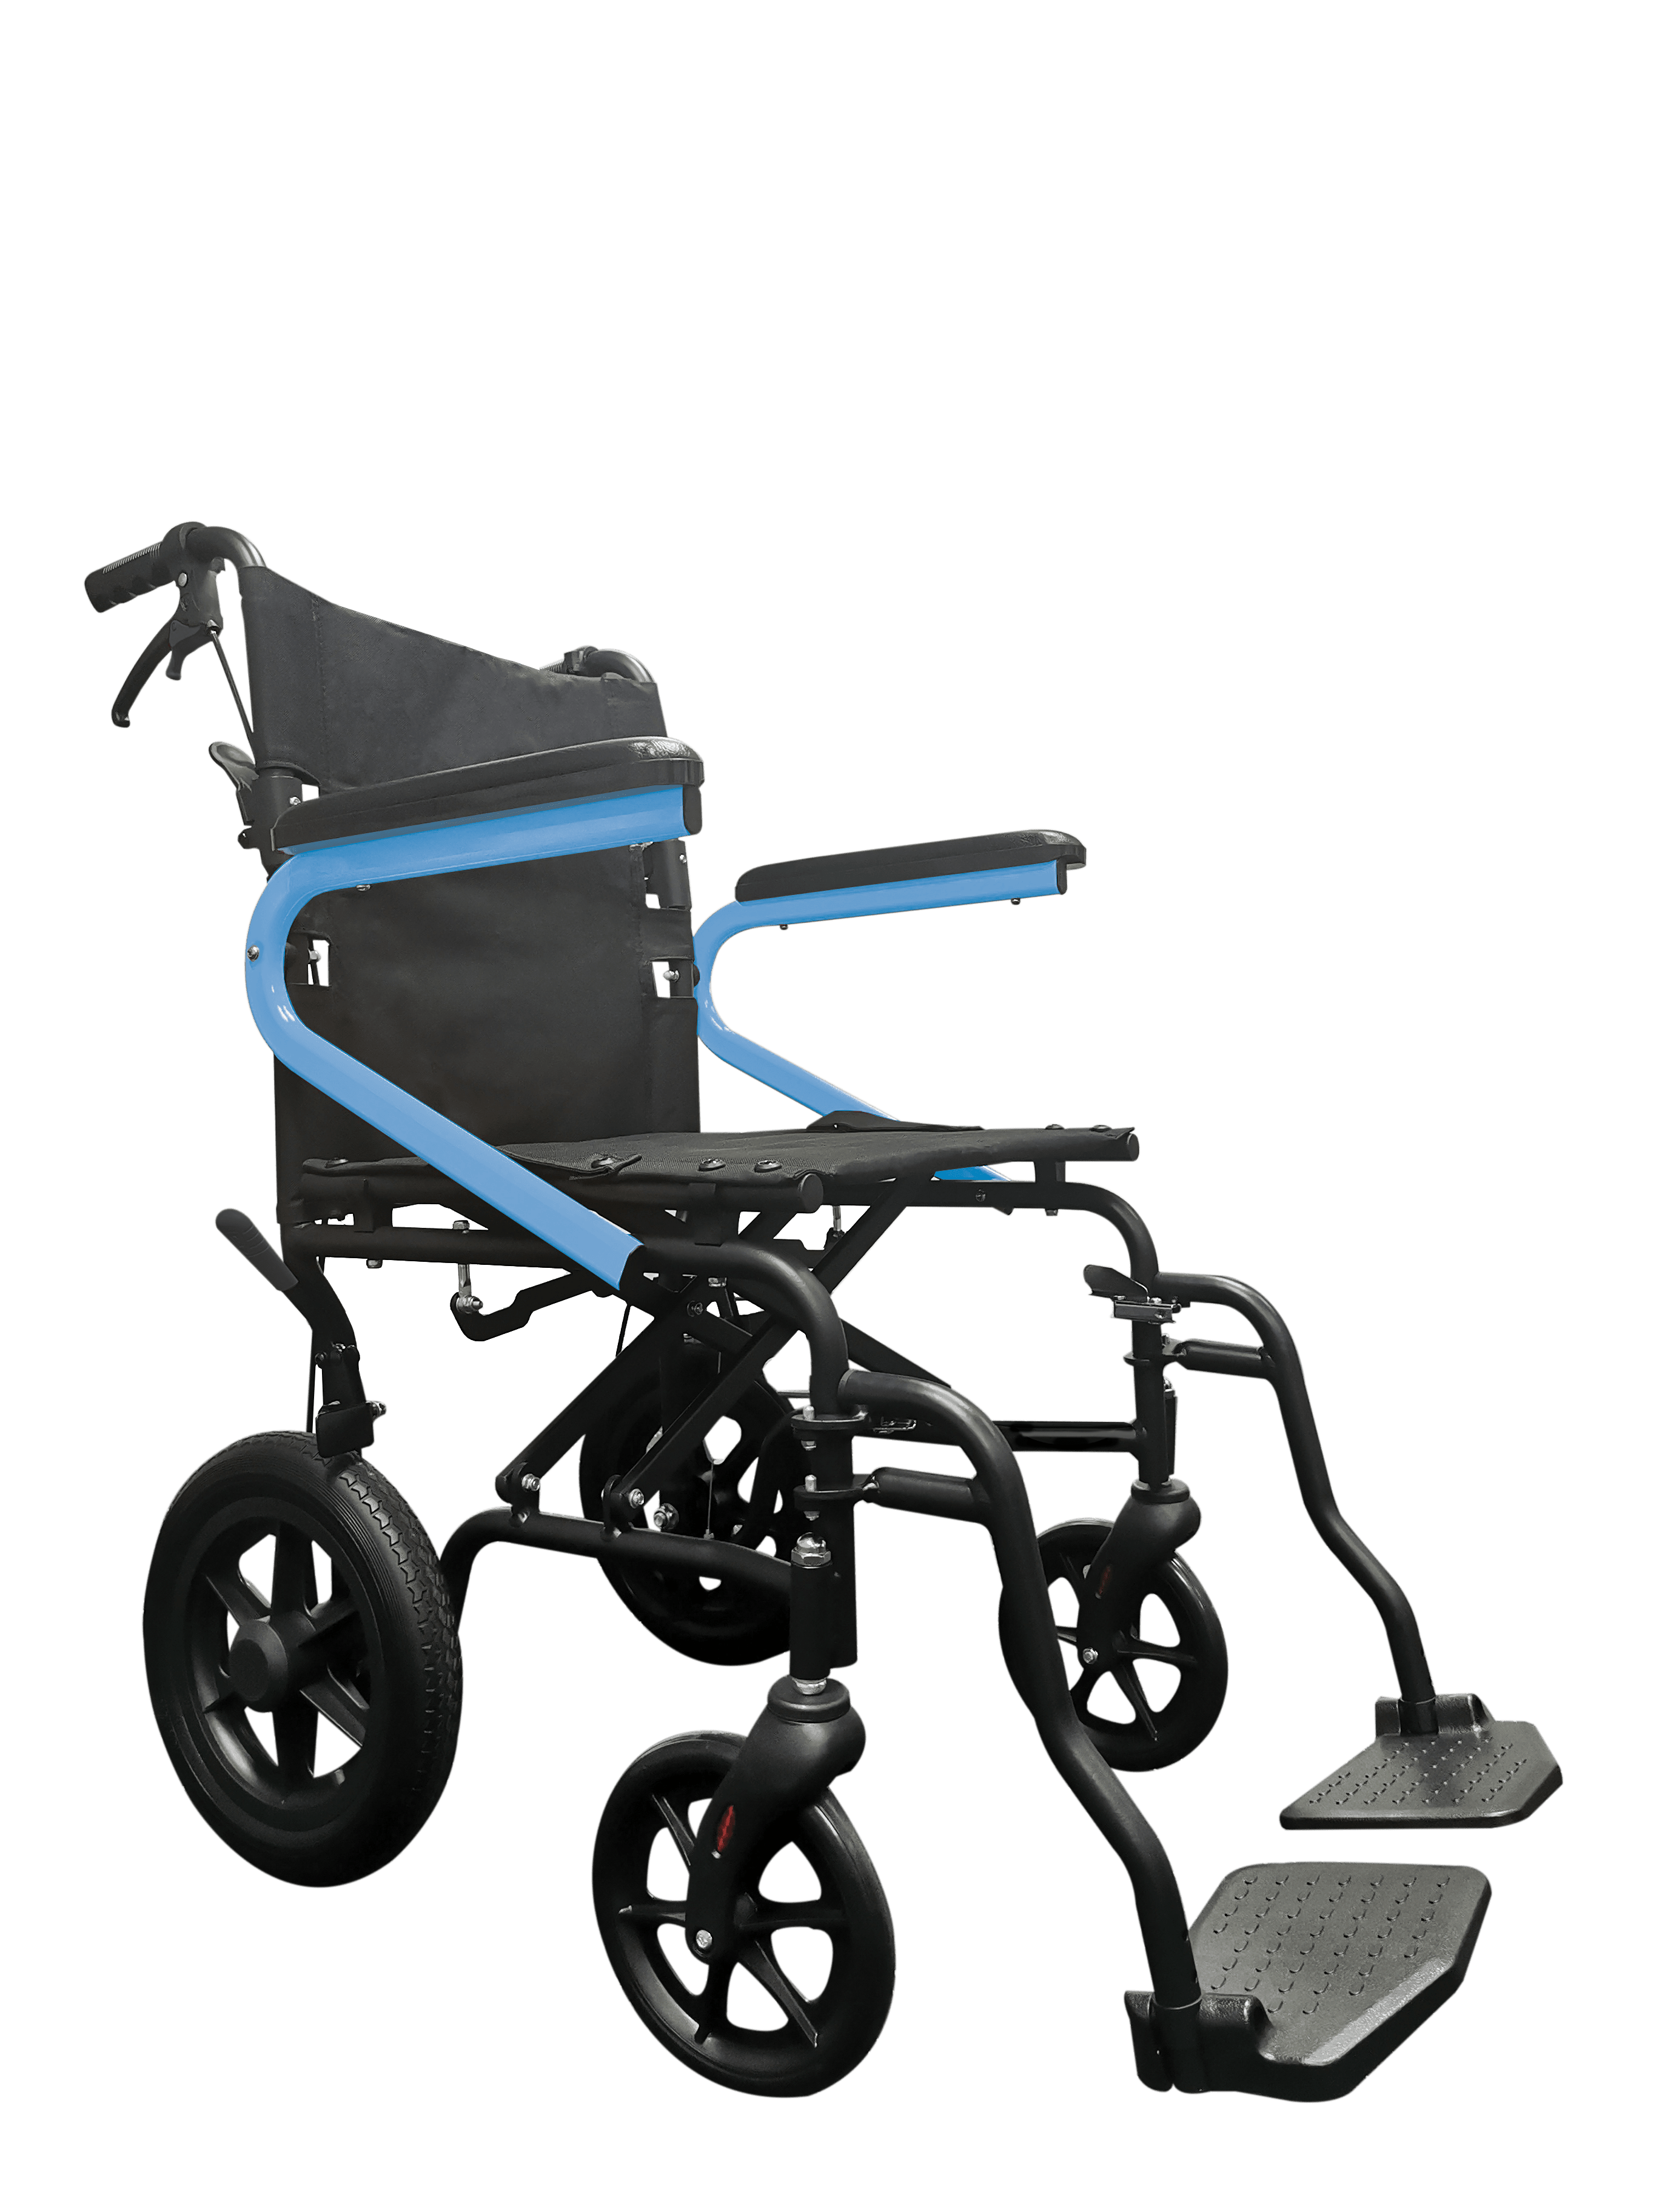 Redgum Brand OPAL Transit Wheelchair